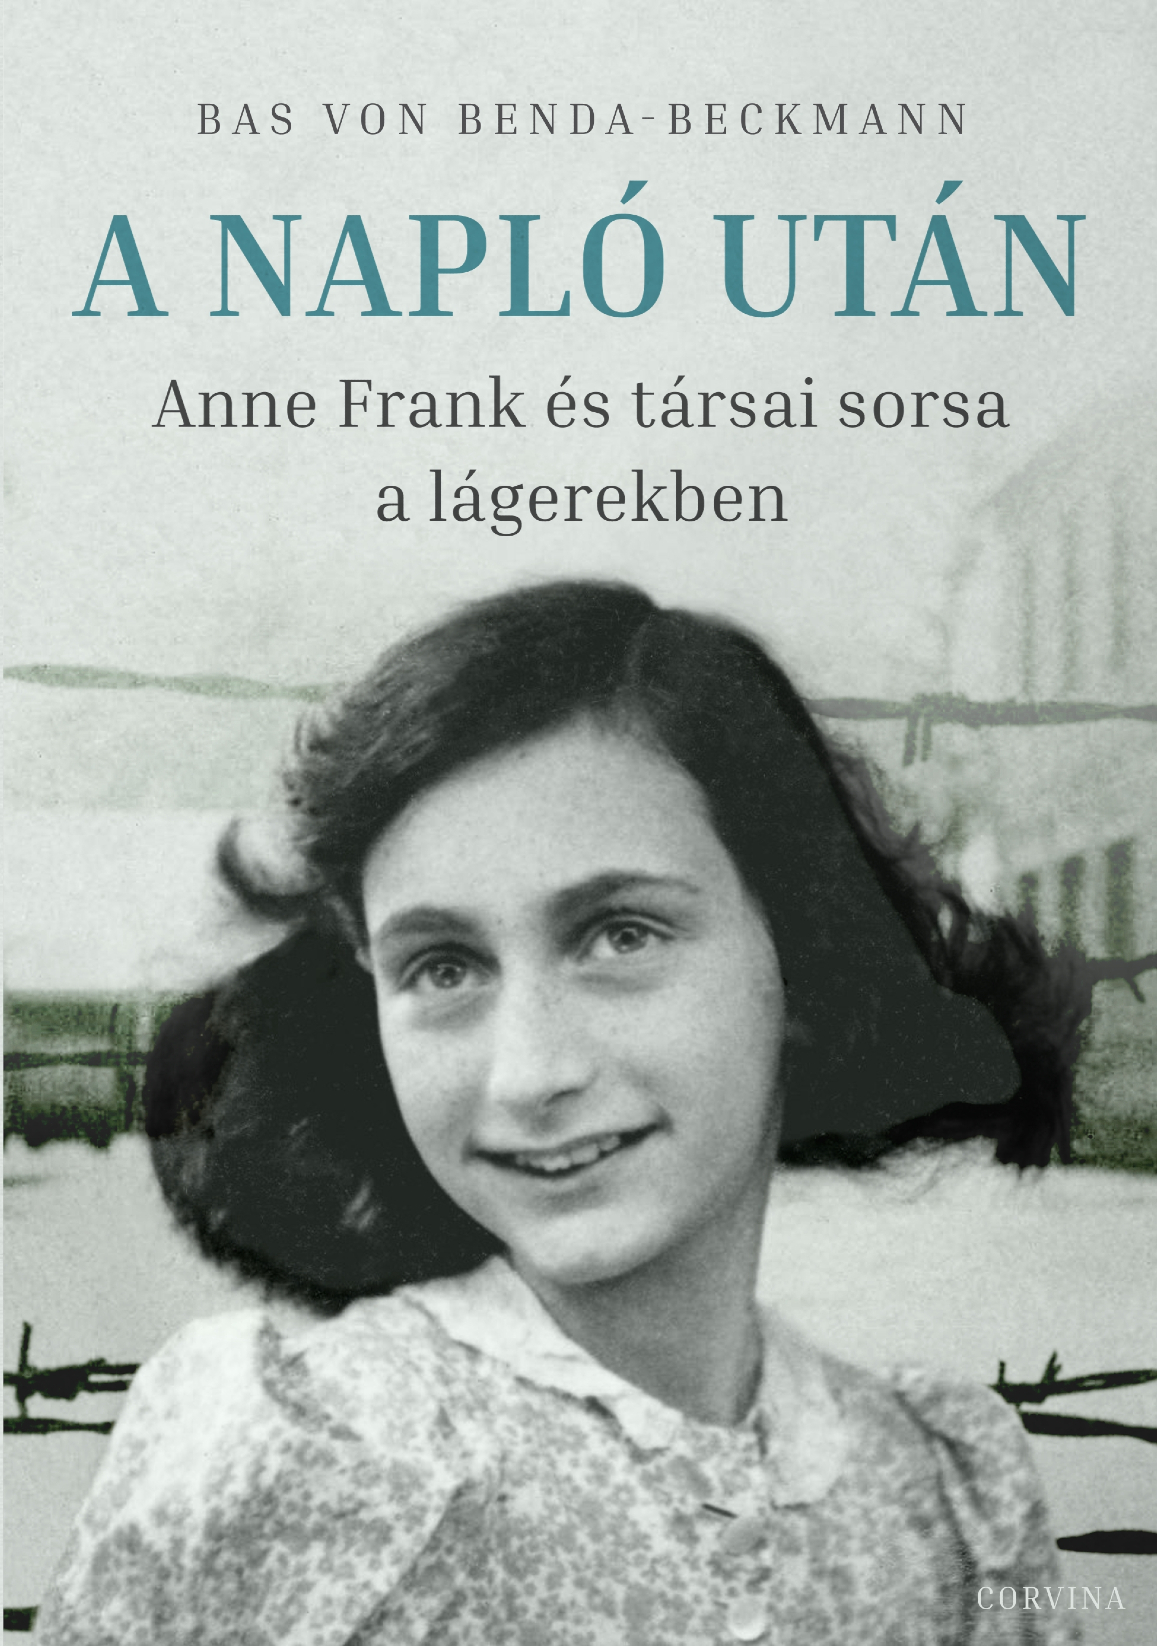 Bas von Benda-Beckmann - A Napló után - Anne Frank és társai sorsa a lágerekben